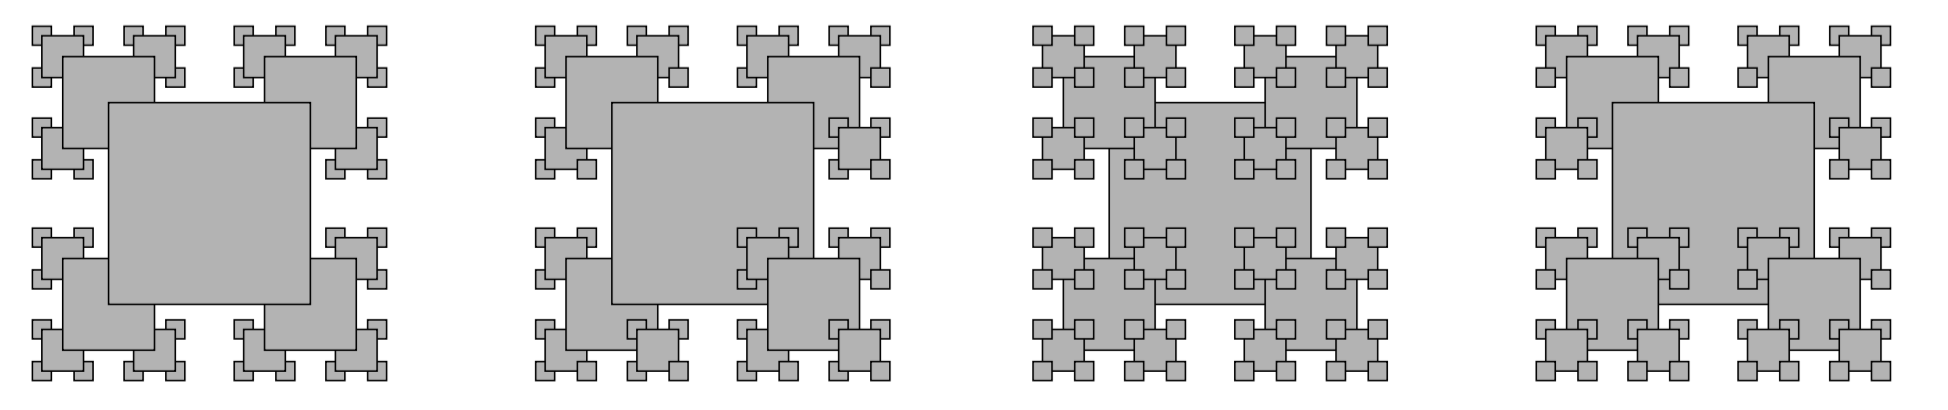 recursive squares